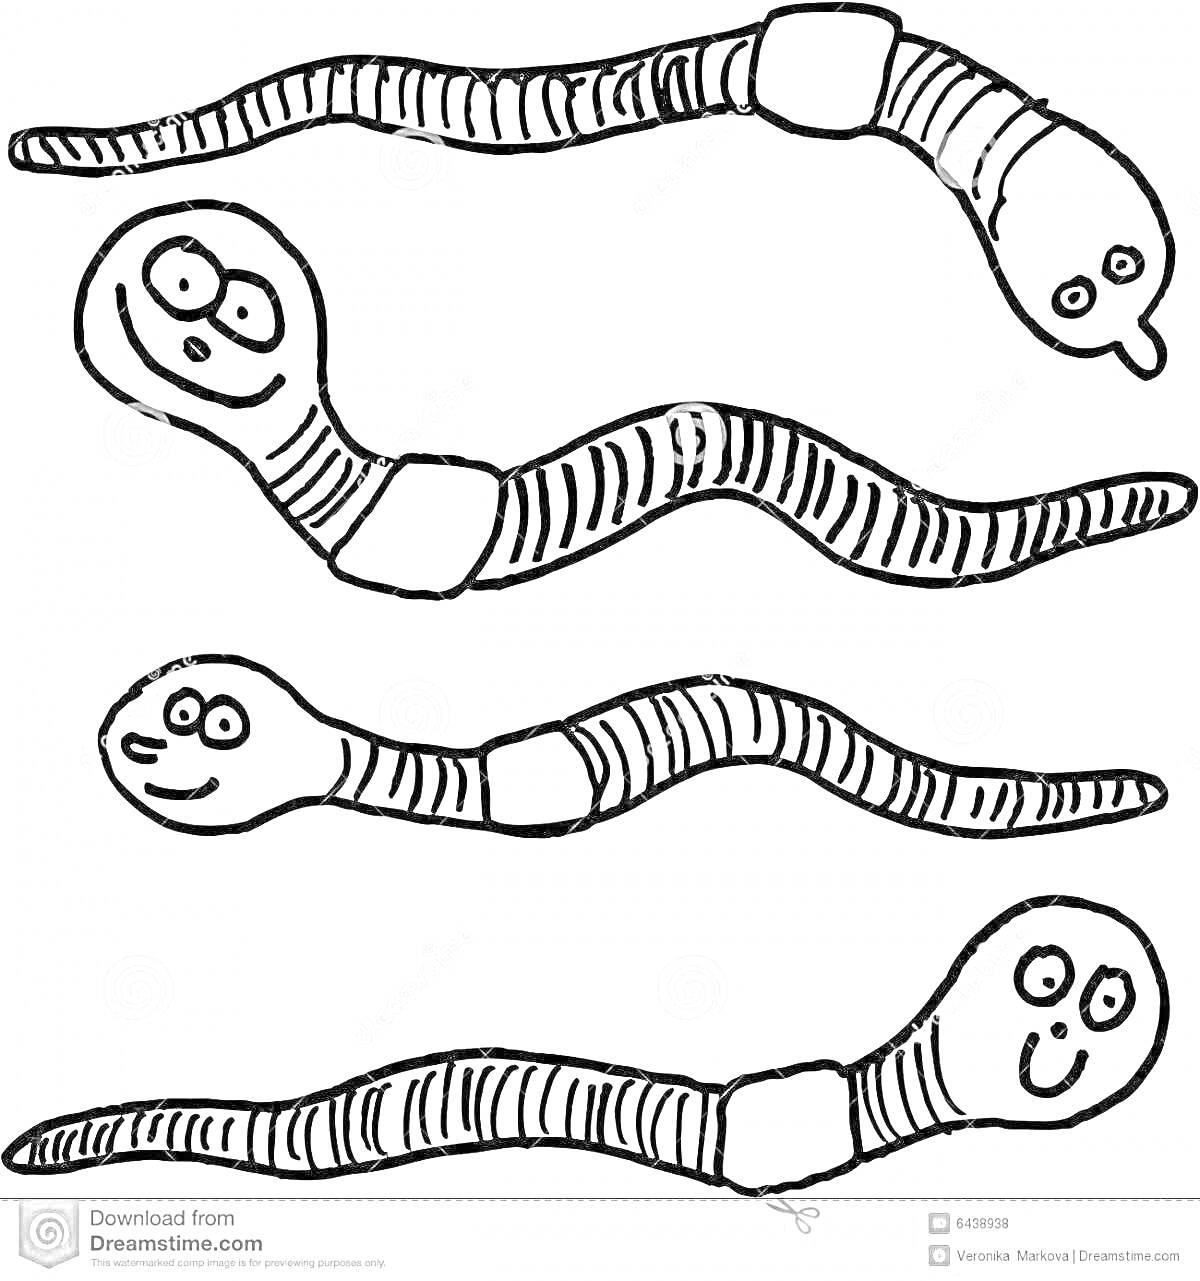 Раскраска Два червяка с лицами, звезда на голове, полосатые тела, третий червяк с простой головой, четвертый червяк с лицом.